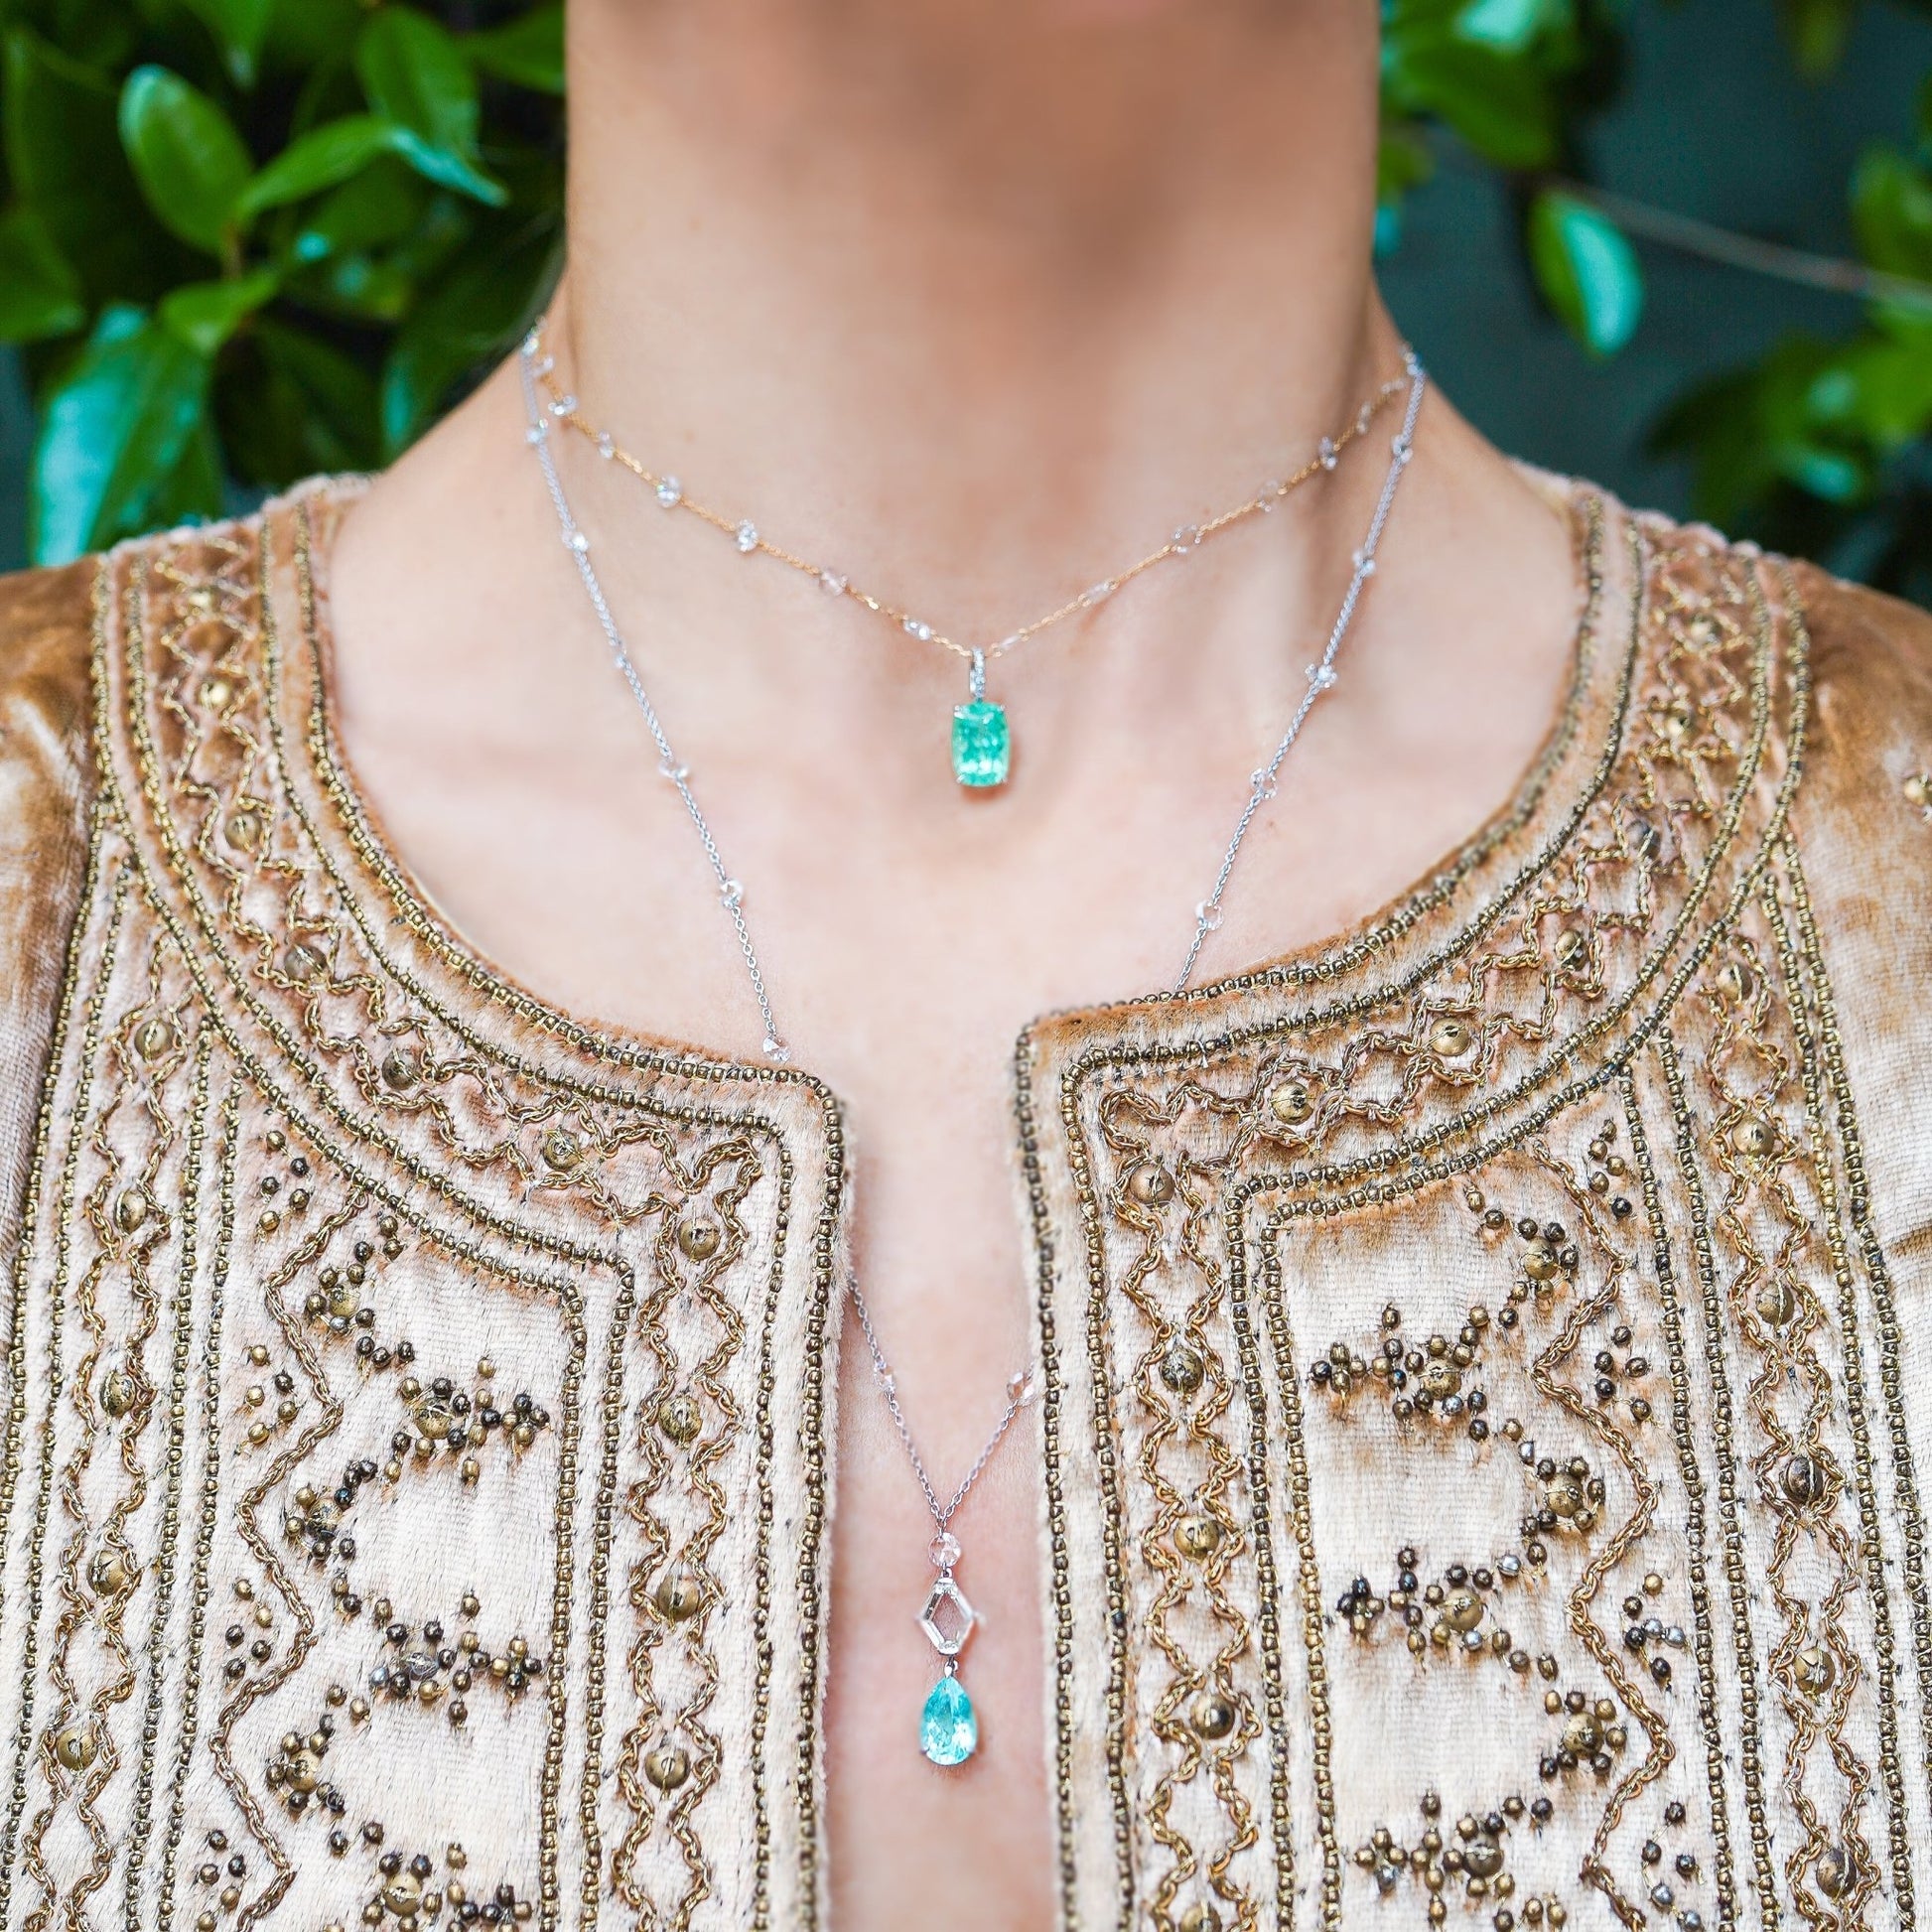 Paraiba and diamond rosary necklace - Ines Nieto London